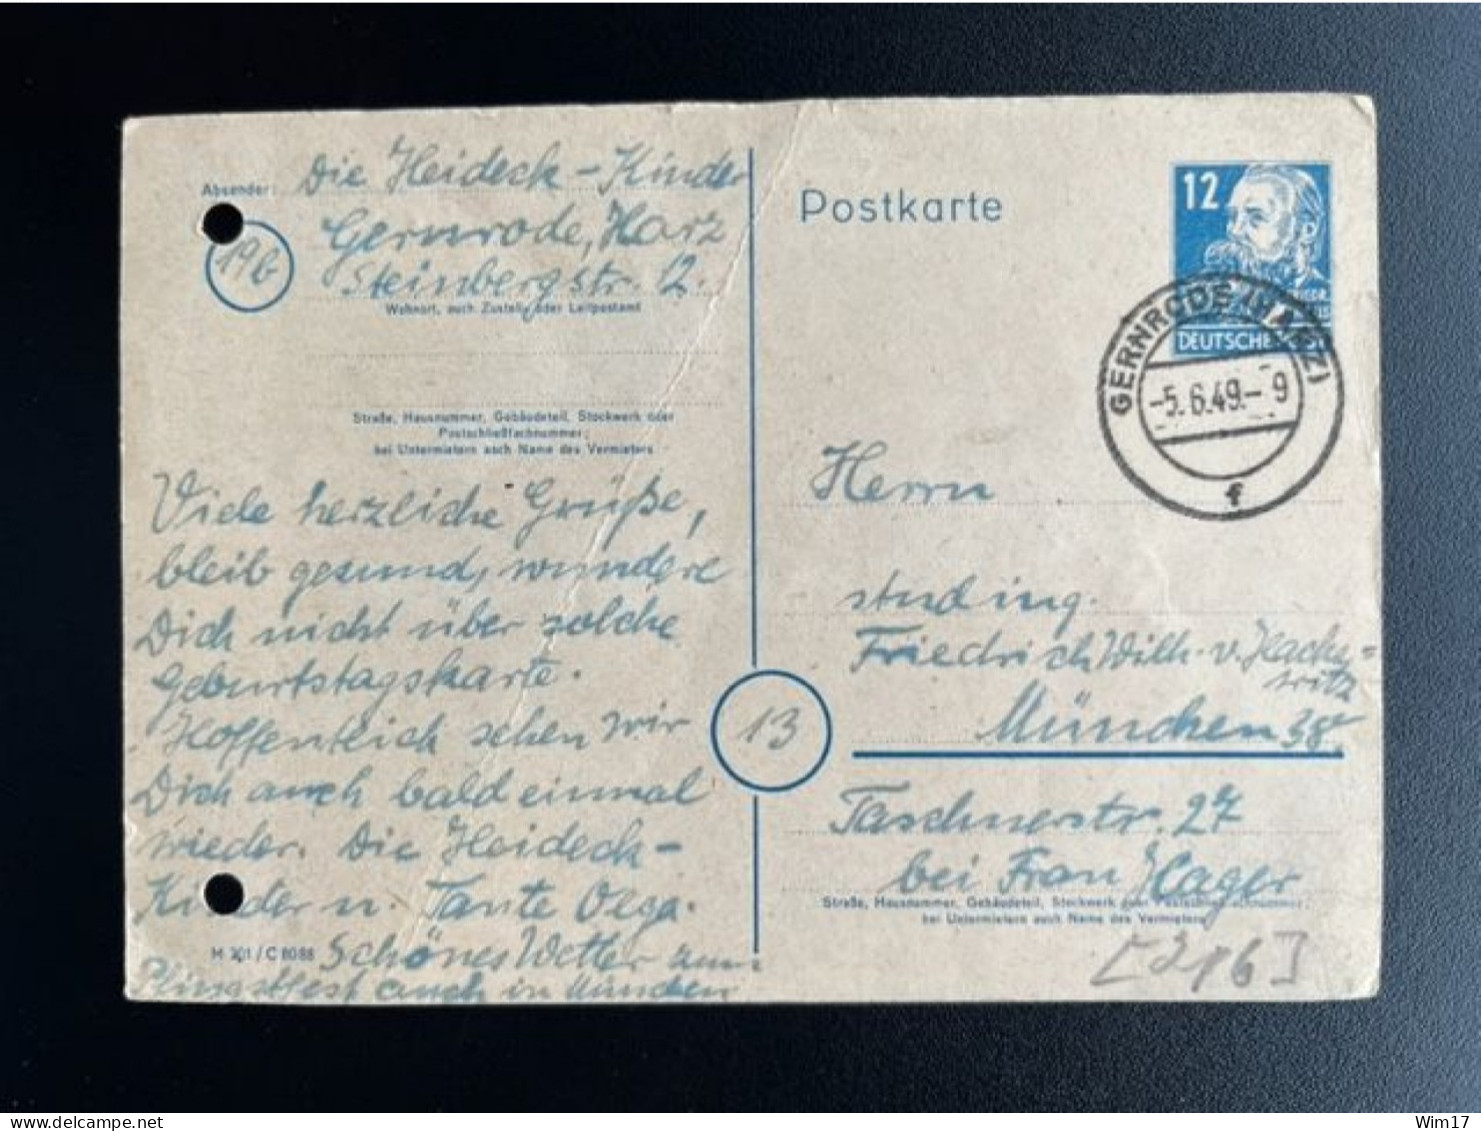 GERMANY 1949 POSTCARD GERNRODE TO MUNCHEN 05-06-1949 DUITSLAND DEUTSCHLAND - Ganzsachen